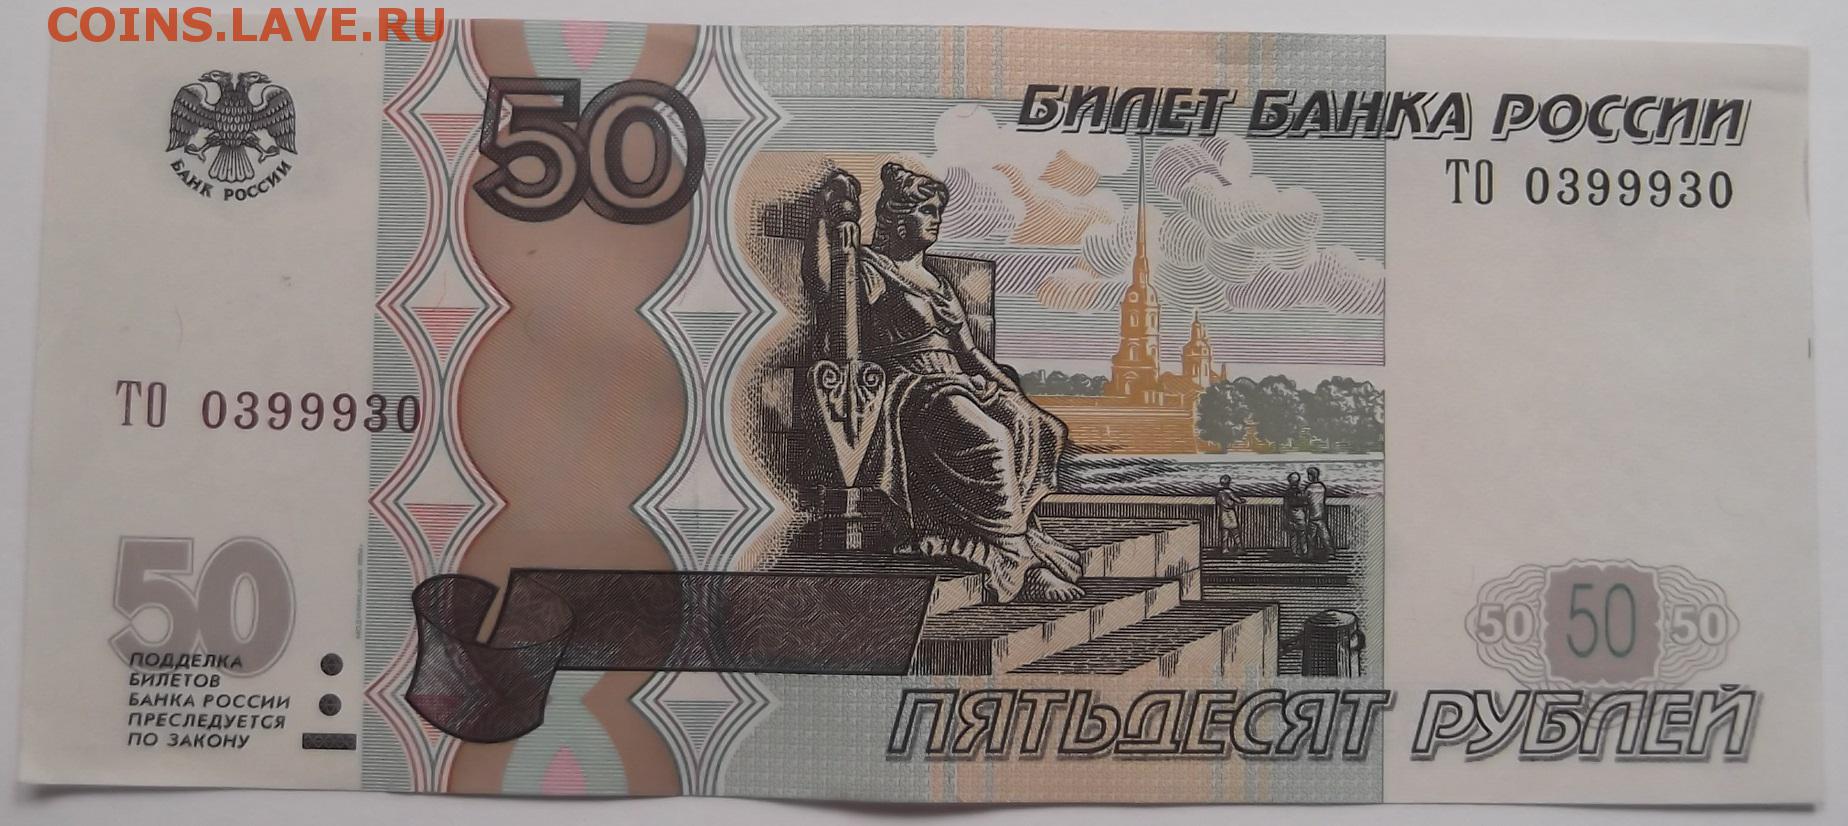 Пятьдесят руб. 50 Рублей. Купюра 50 рублей. Российские банкноты 50 рублей. Банкнота 50 руб.